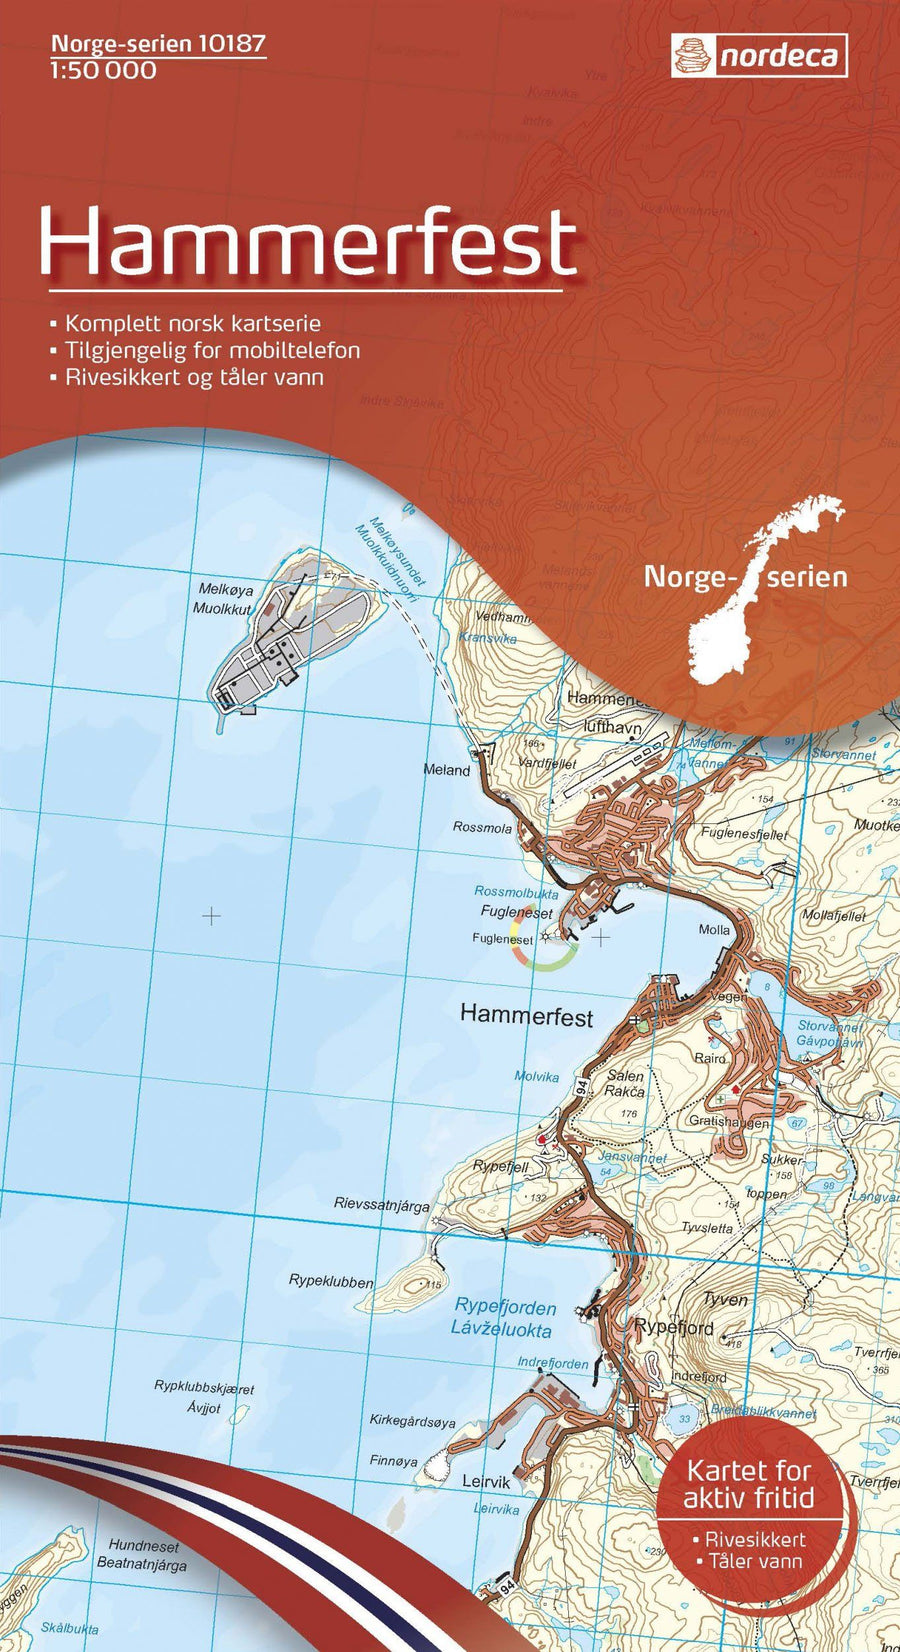 Carte de randonnée n° 10187 - Hammerfest (Norvège) | Nordeca - Norge-serien carte pliée Nordeca 